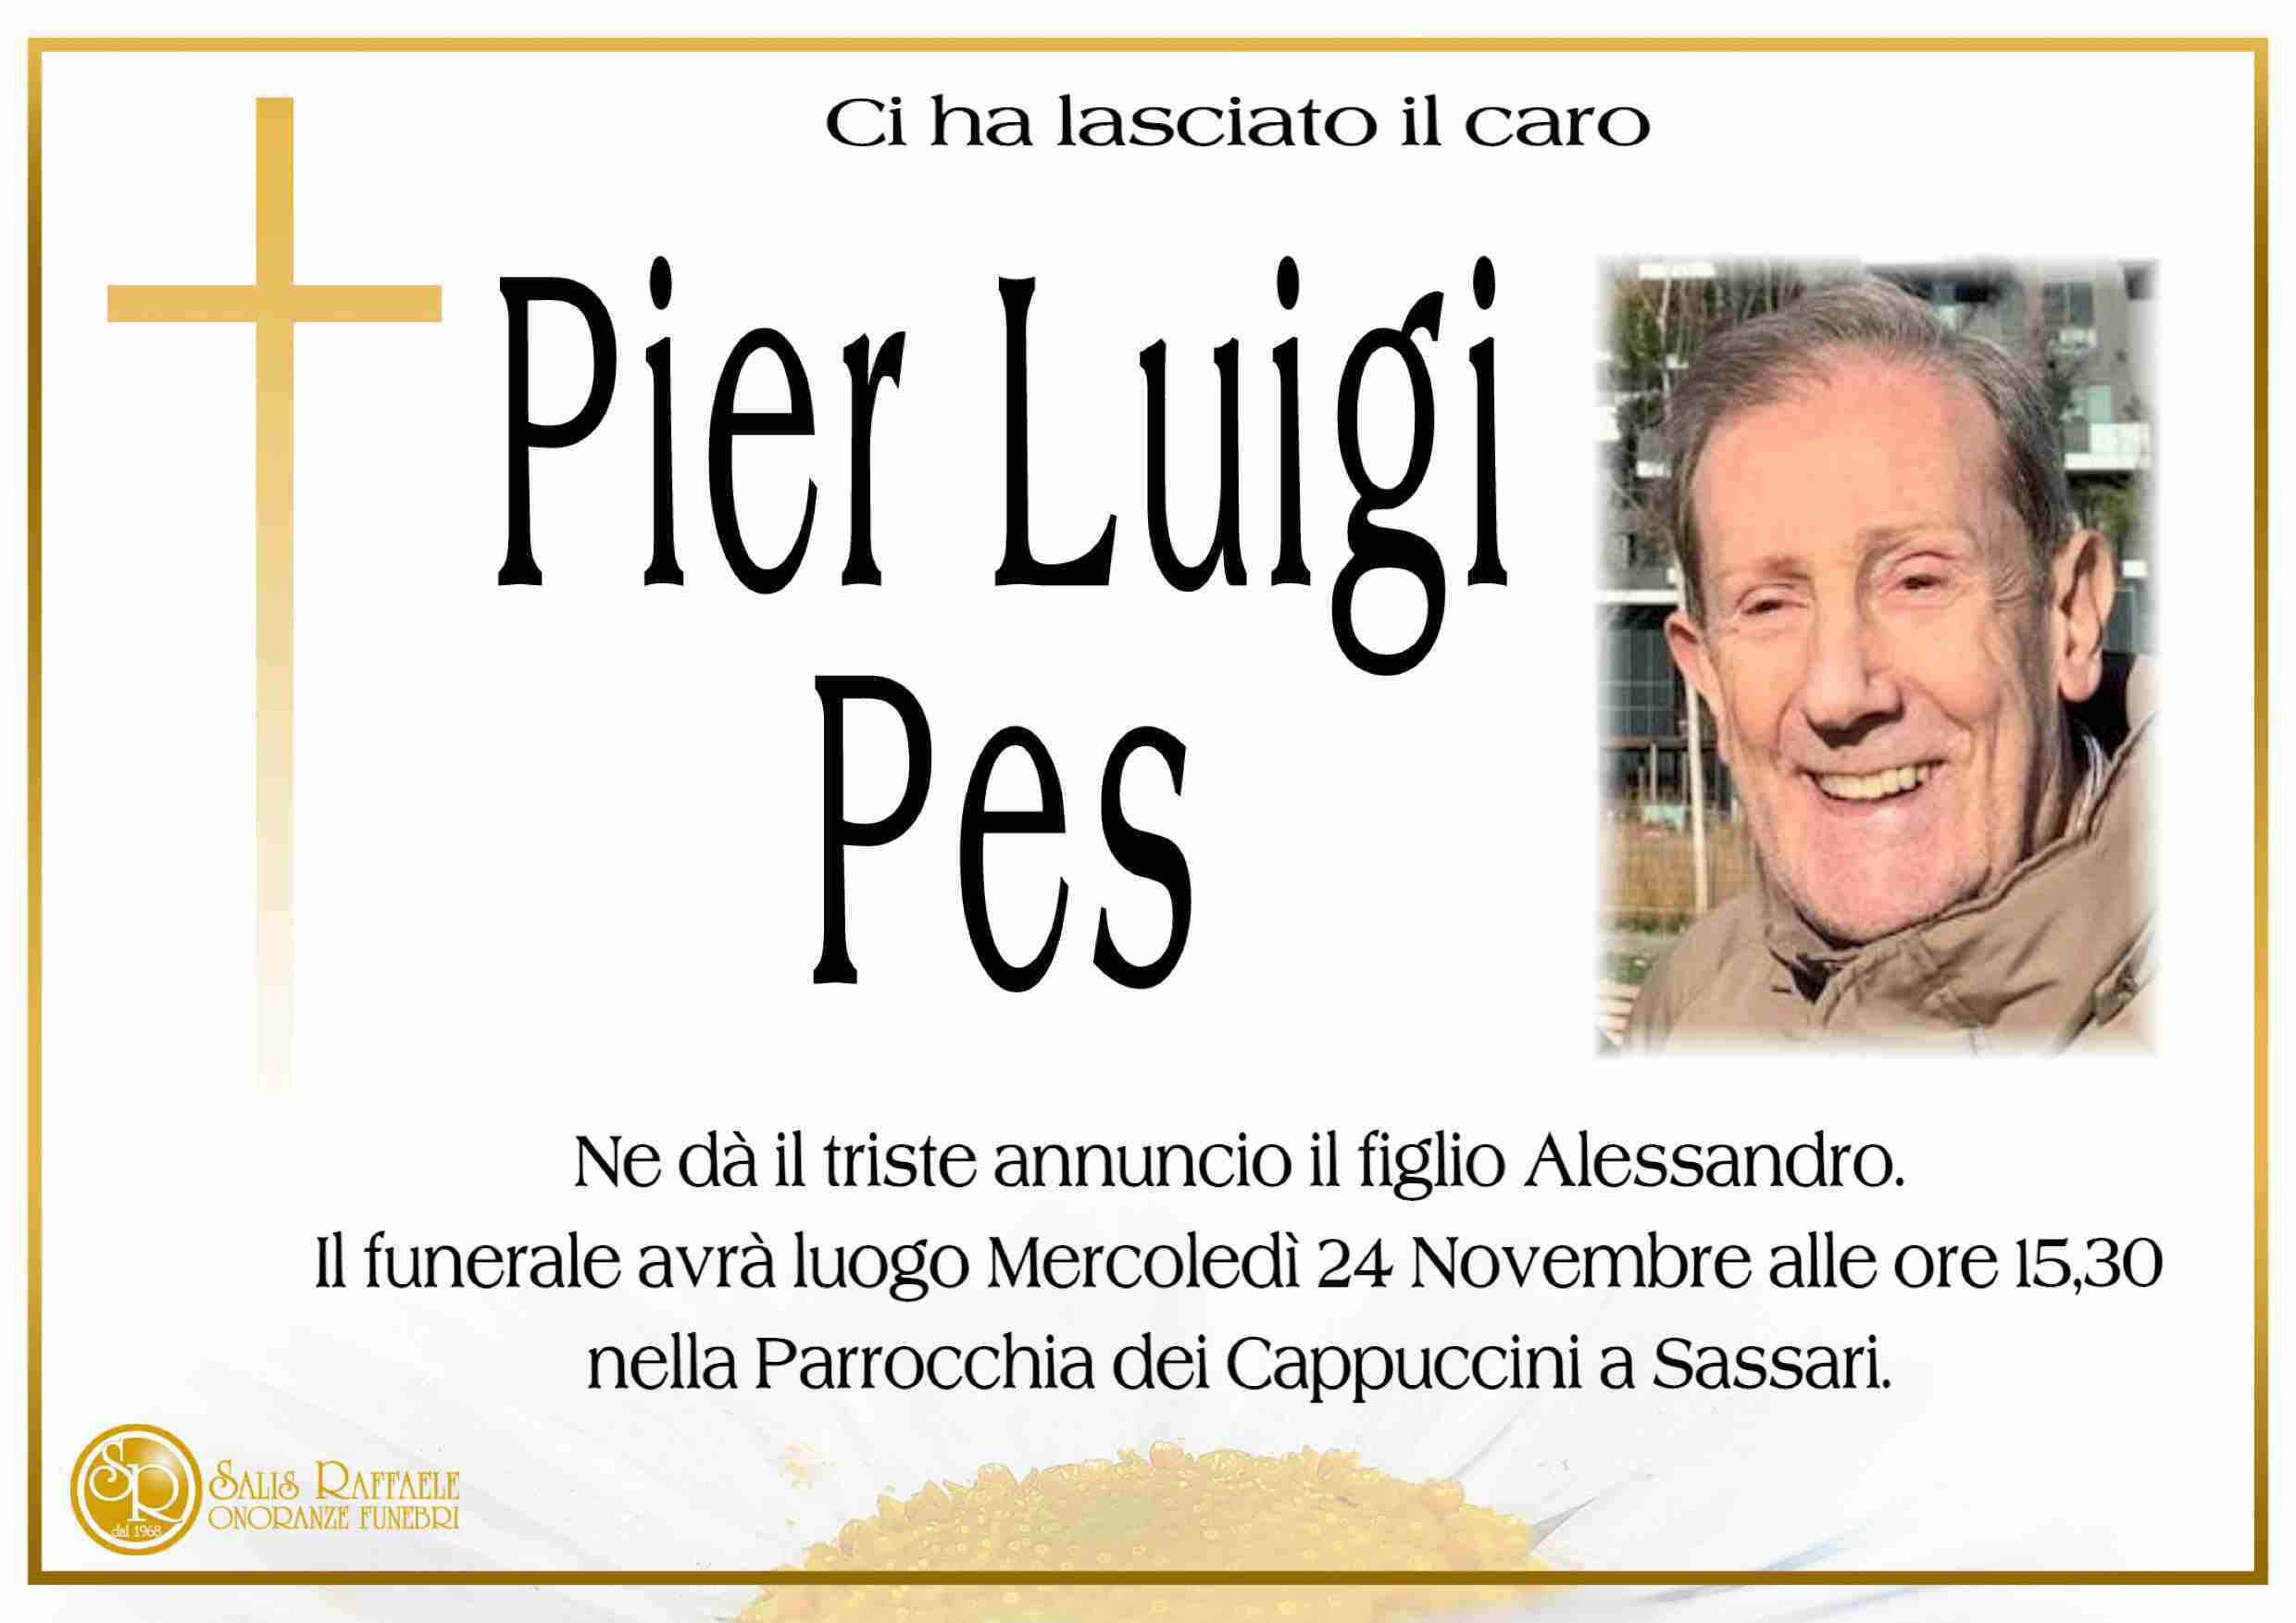 Pier Luigi Pes